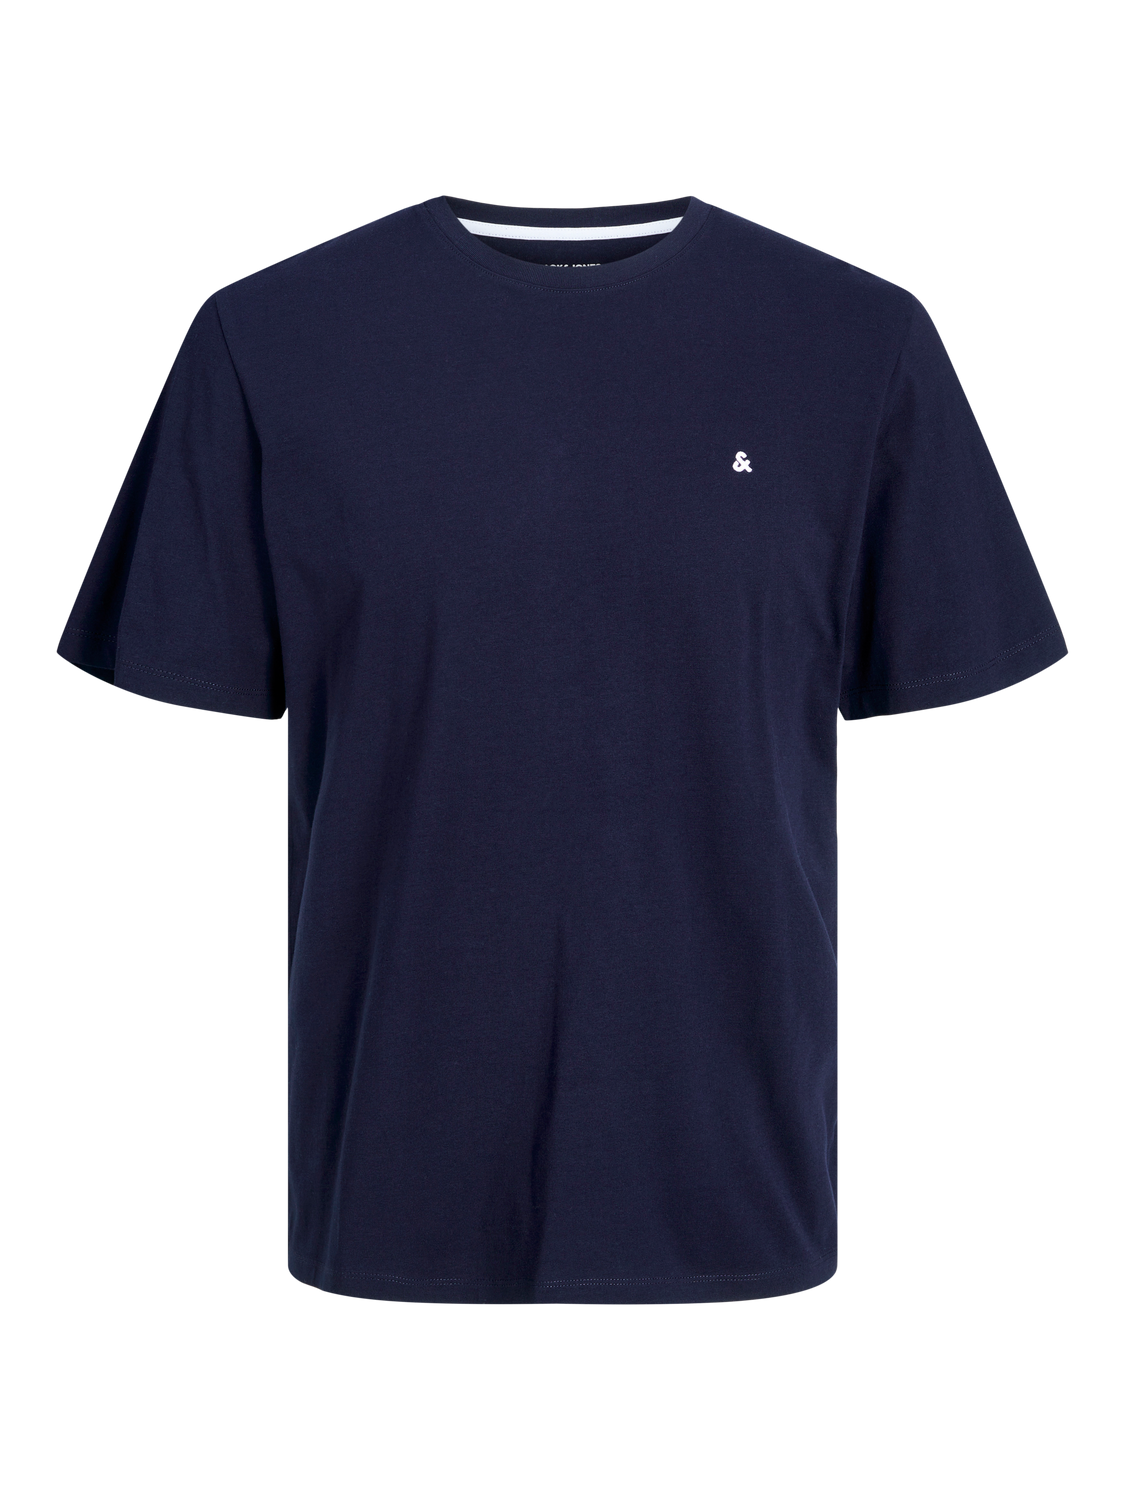 JJEPAULOS T-Shirt - Navy Blazer